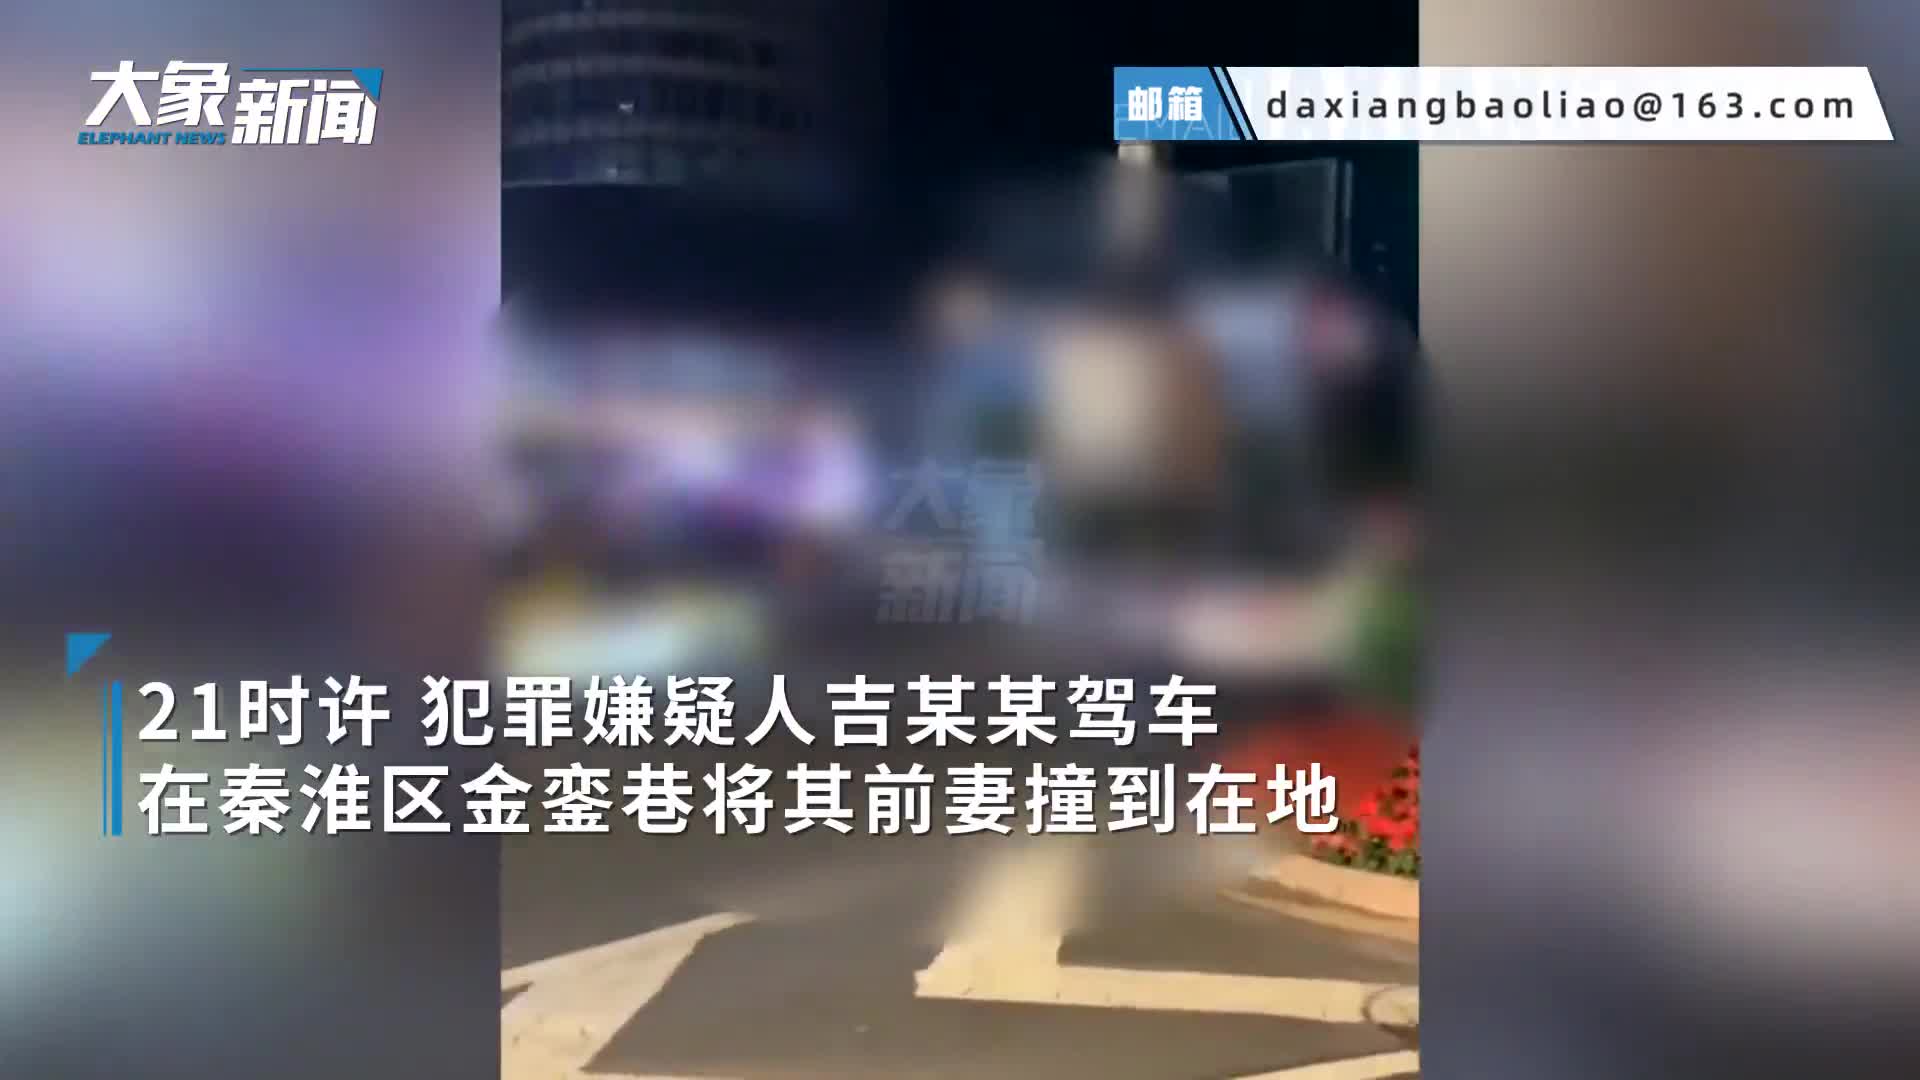 警方通报 南京吉某某驾车撞人并持刀捅人案 因个人感情等矛盾引发的故意杀人案 南京市 新浪财经 新浪网